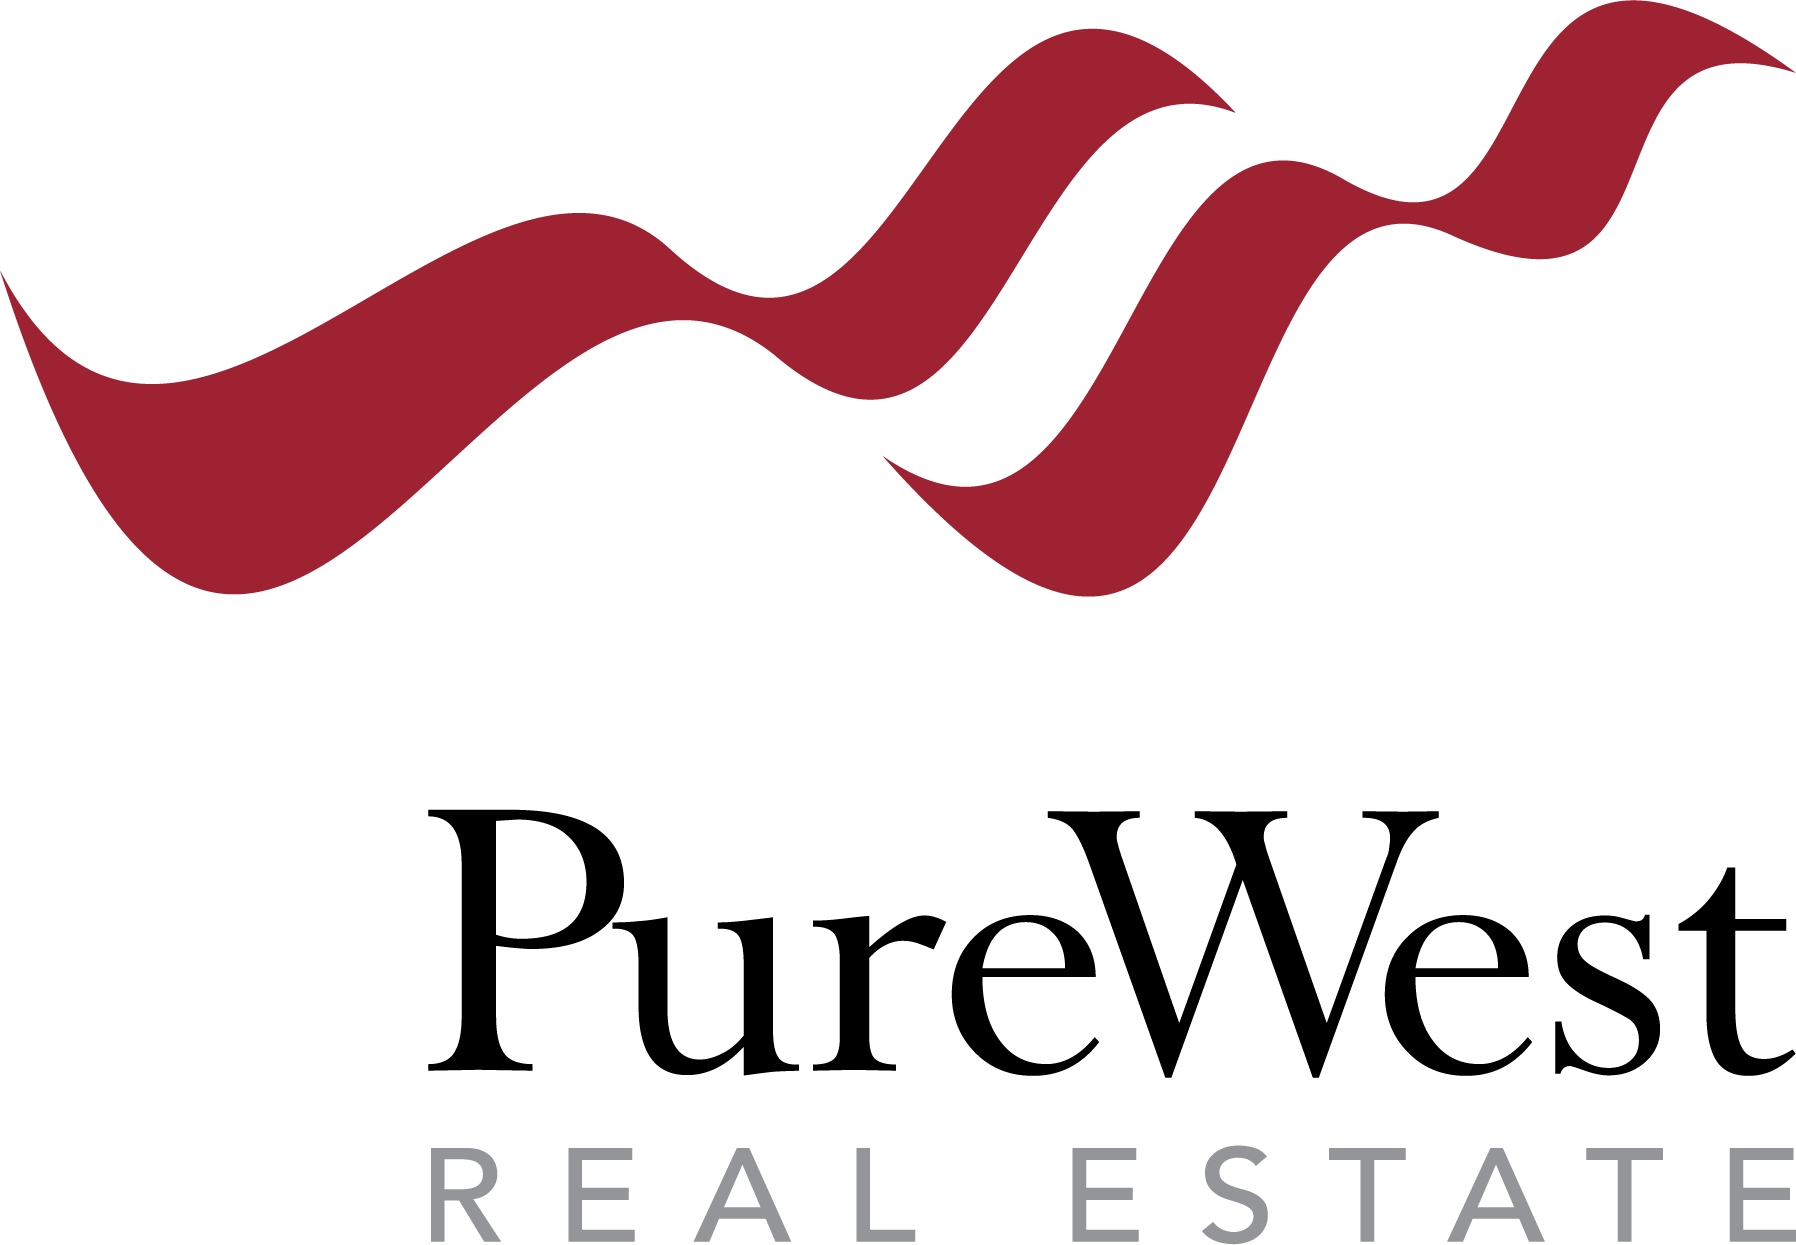 David Girardot - Pure West Real Estate Logo